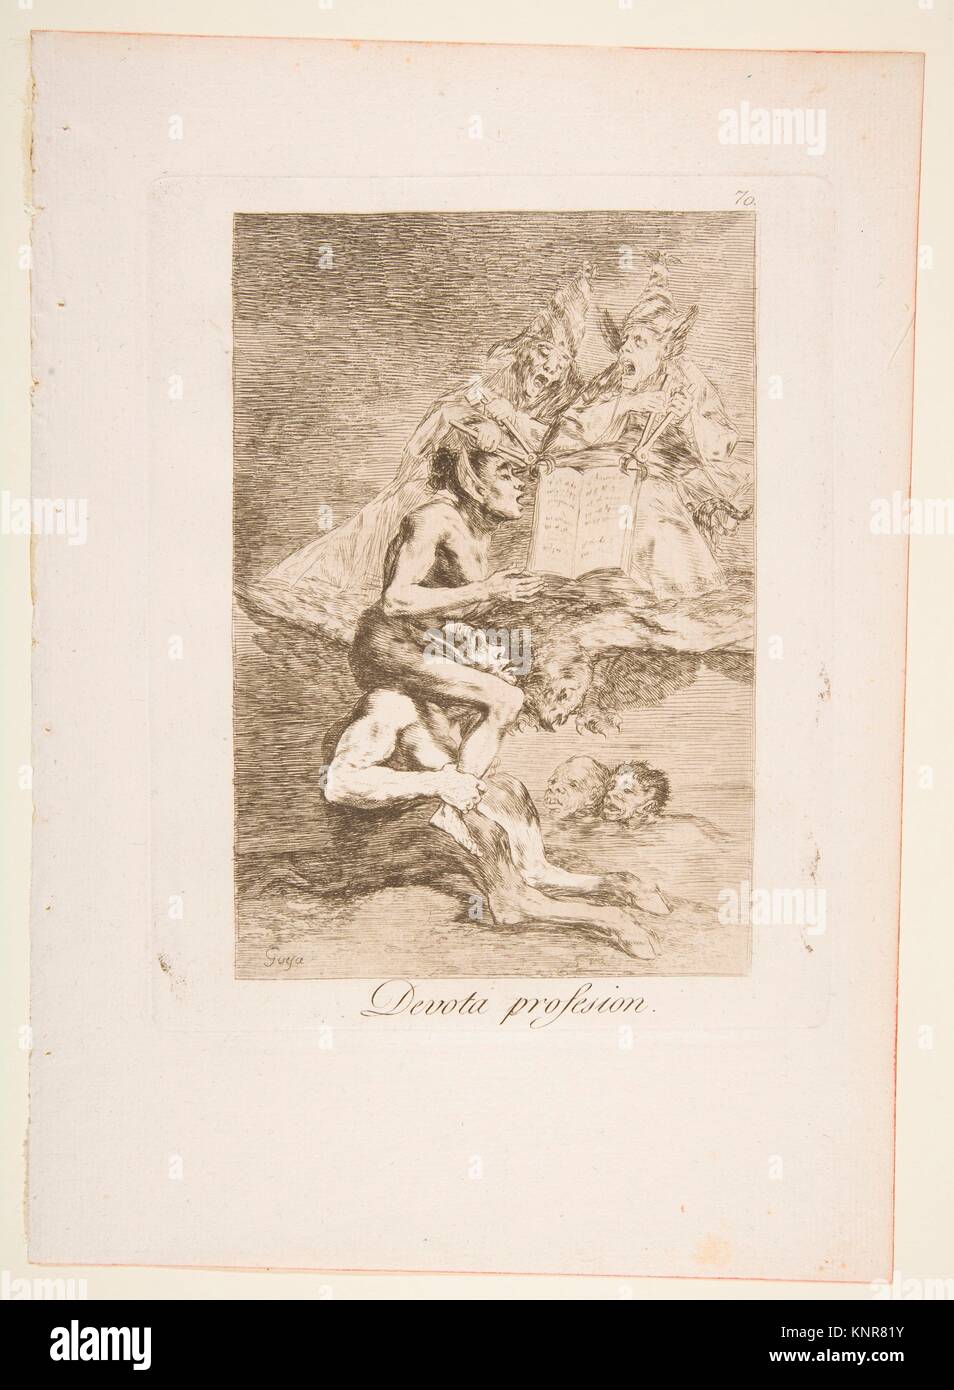 70 Chapa de 'Los Caprichos': devota profesión (Devota profesion.). Series/cartera: Los Caprichos; Artista: Goya (Francisco de Goya y Lucientes) Foto de stock